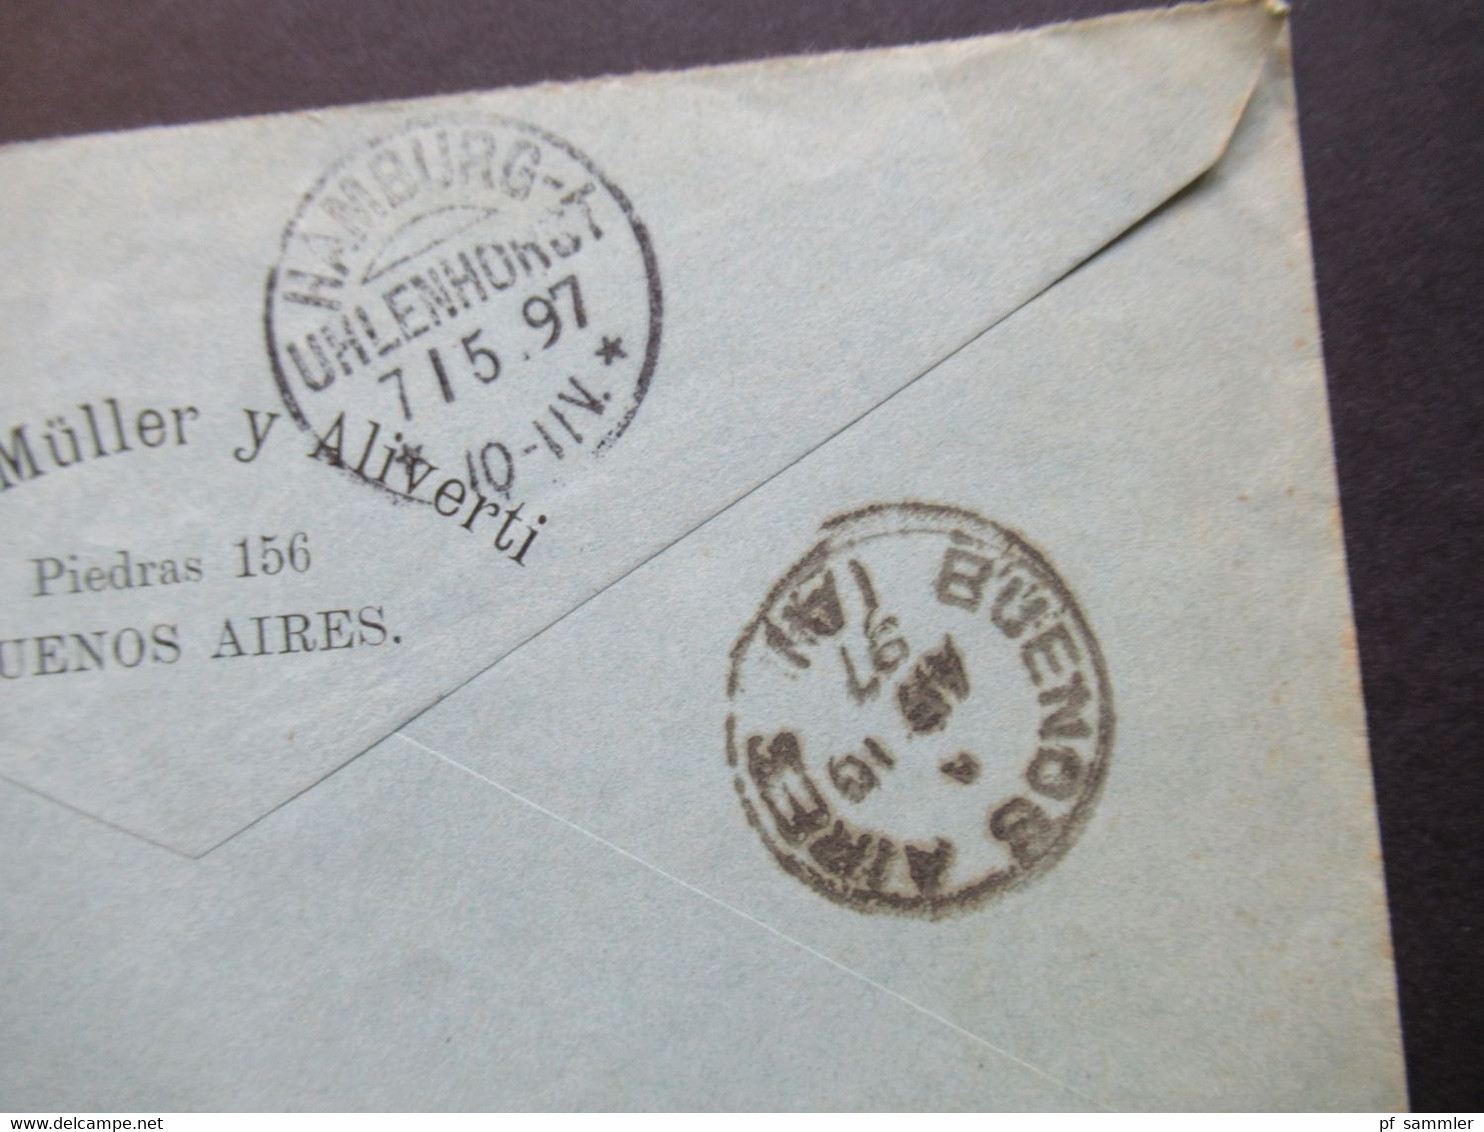 Argentinien 1897 Por Vapor Nile Nach HH Mit KOS Hamburg Uhlenhorst Umschlag Adolfo Müller Y Aliverti Buenos Aires - Storia Postale